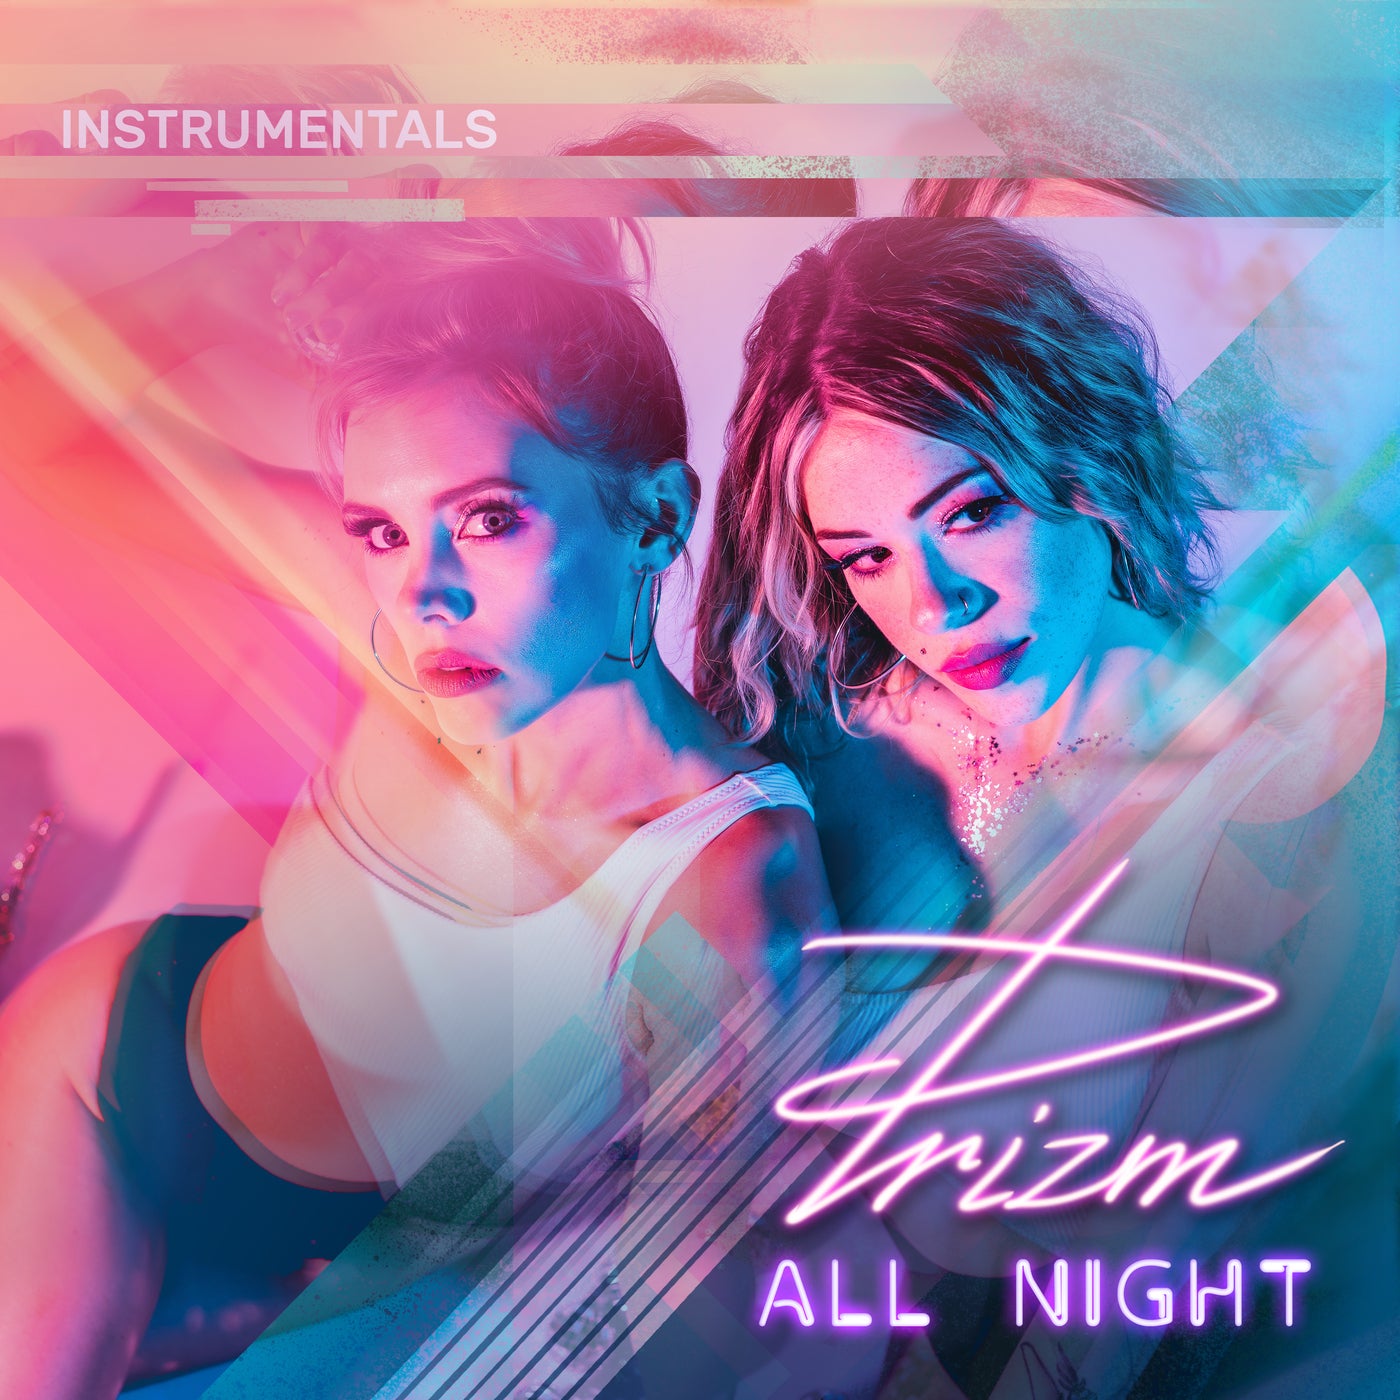 All Night - Instrumentals